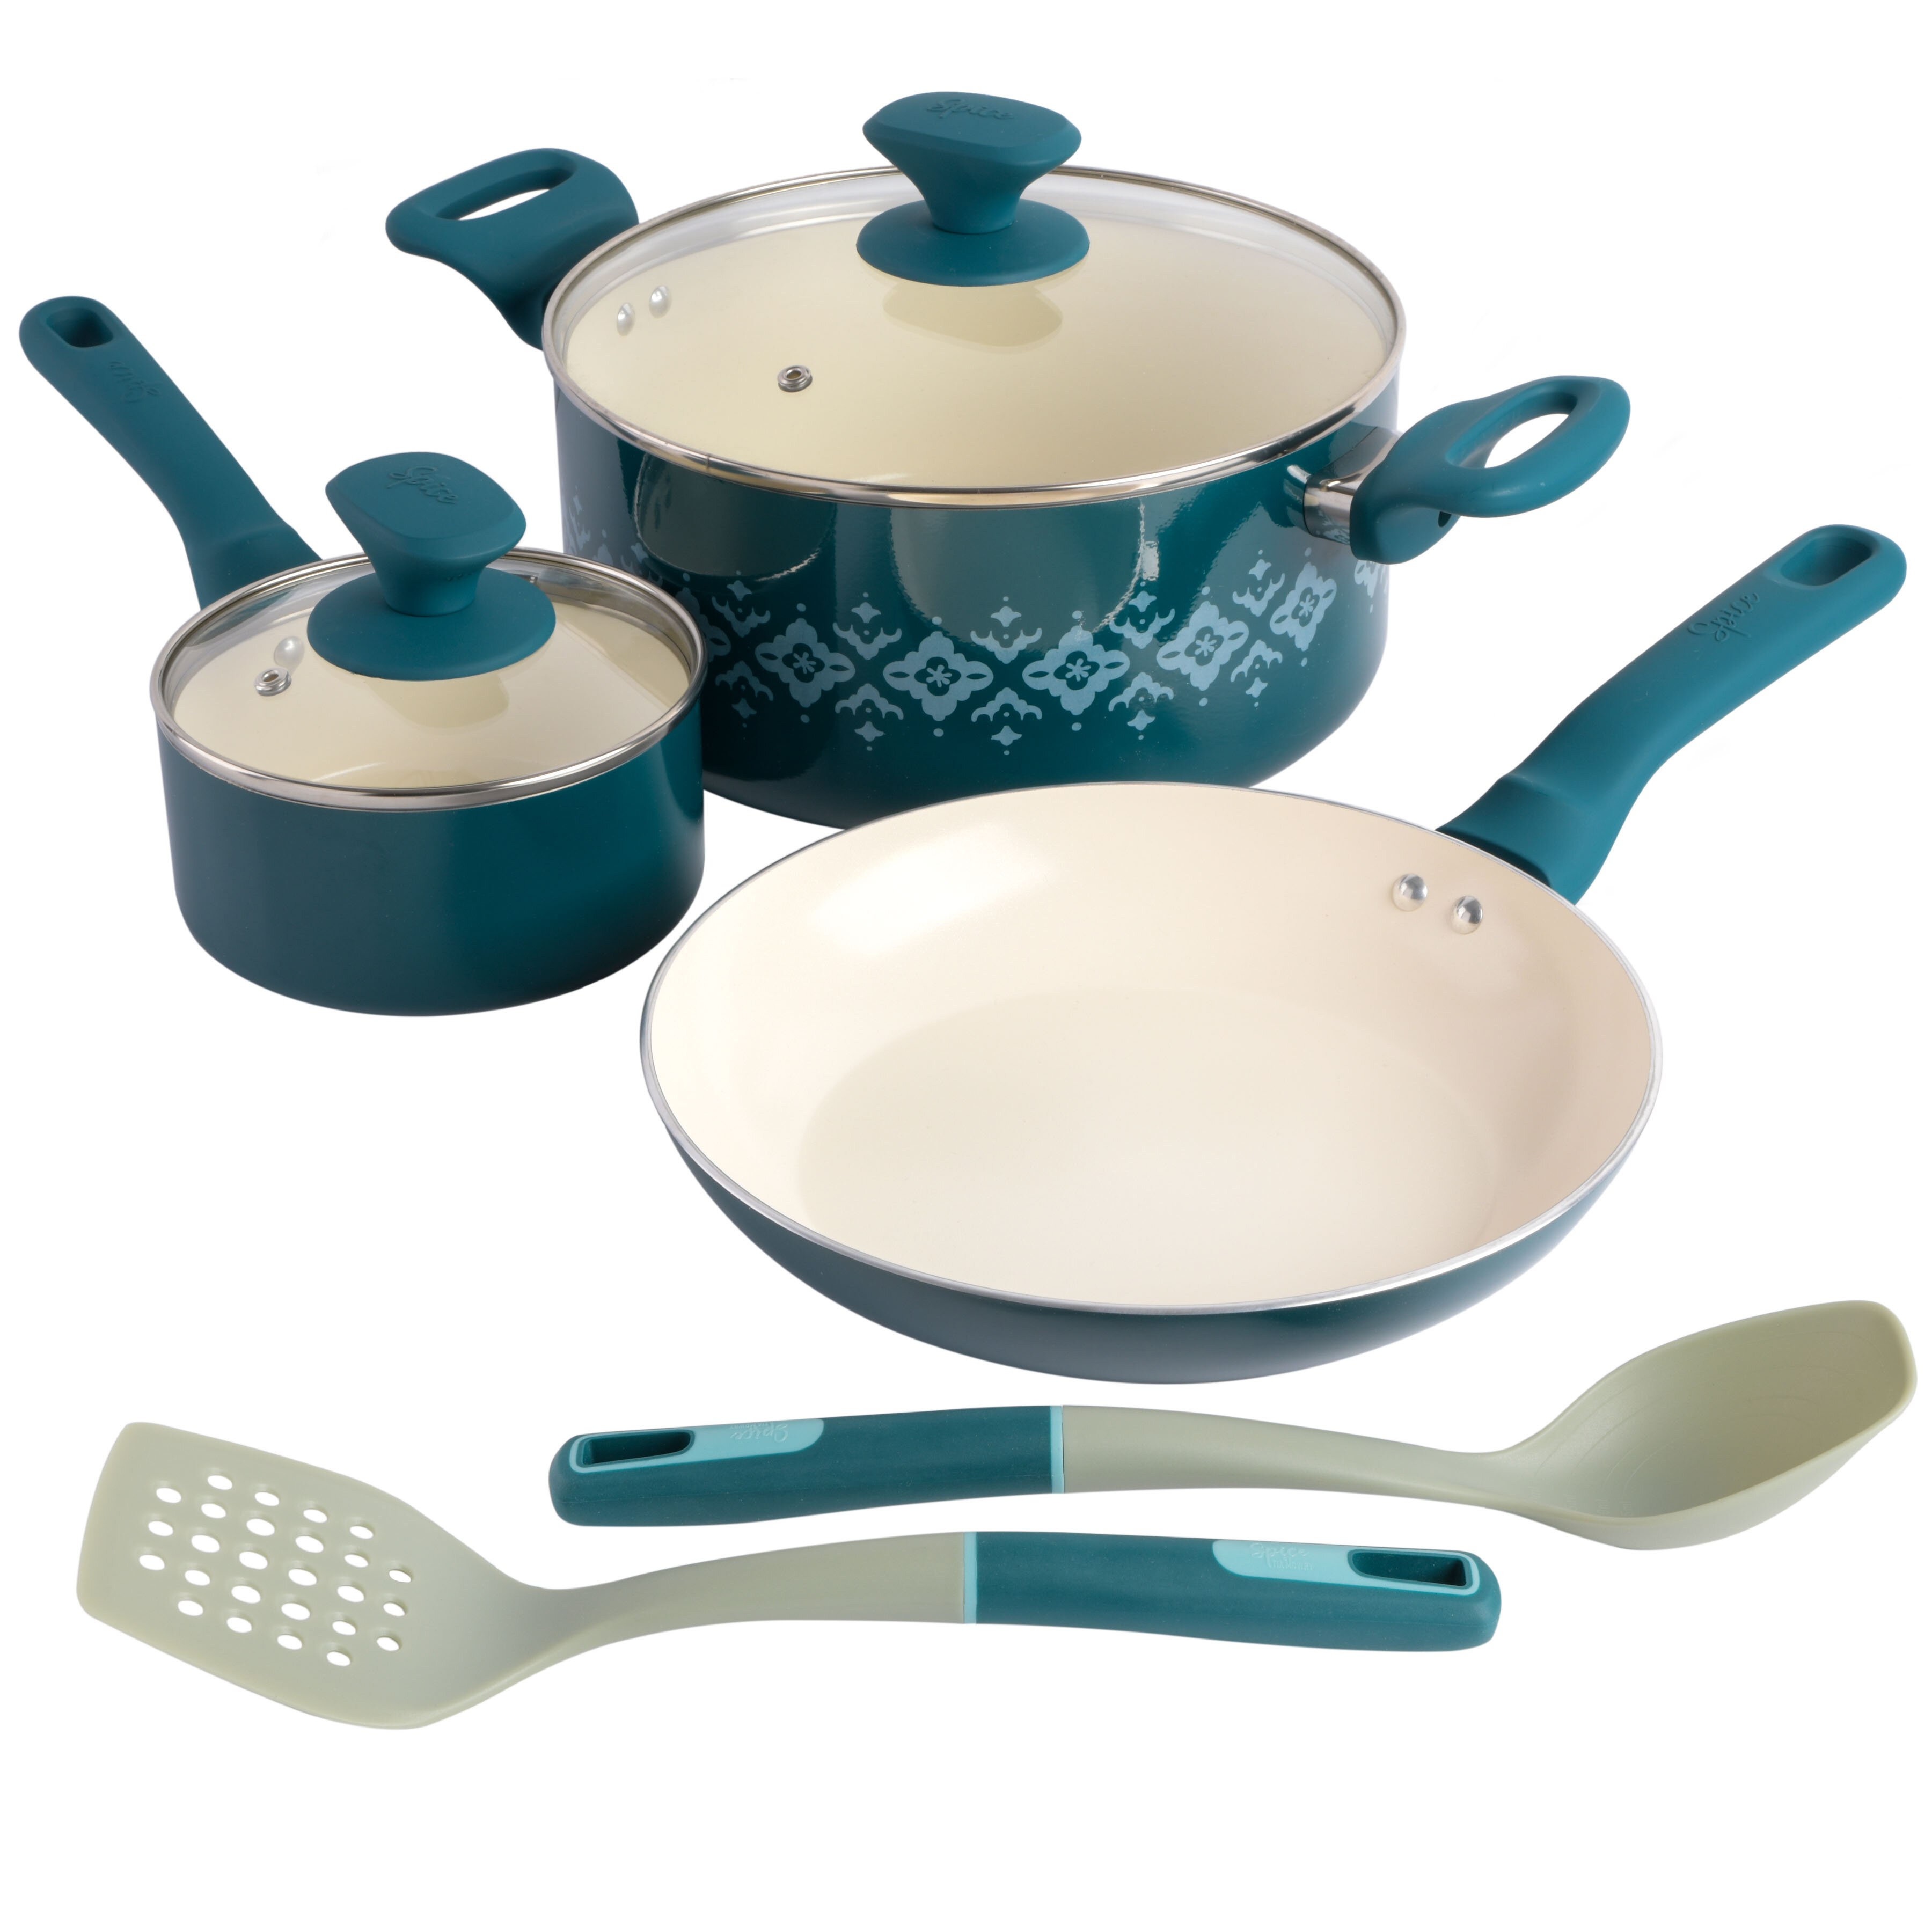 https://assets.wfcdn.com/im/85933930/compr-r85/1856/185606712/7-piece-non-stick-enameled-cast-iron-cookware-set.jpg